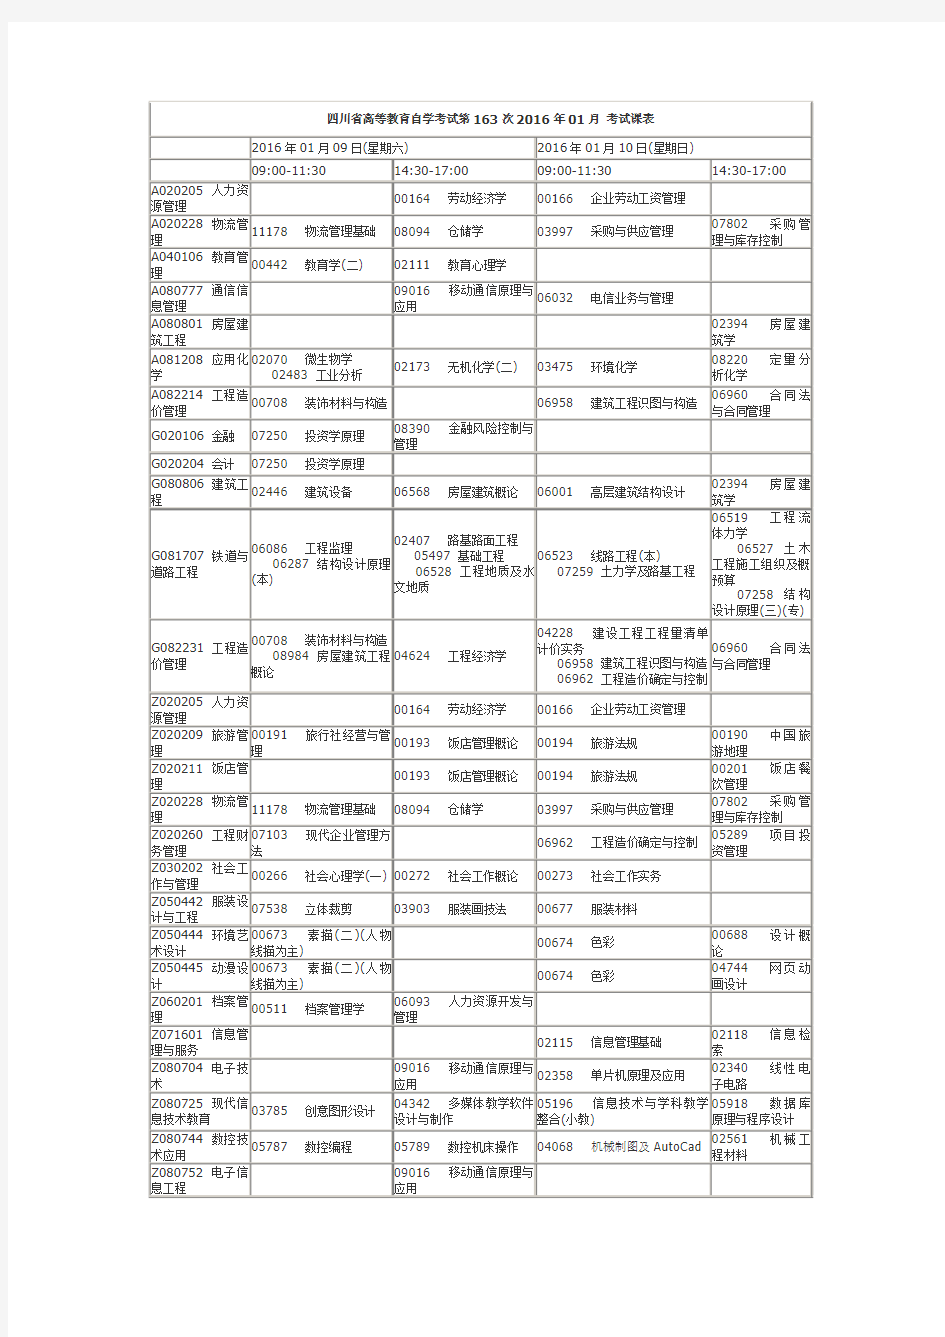 四川高教自考第163次 2016年1月考试课表和教材